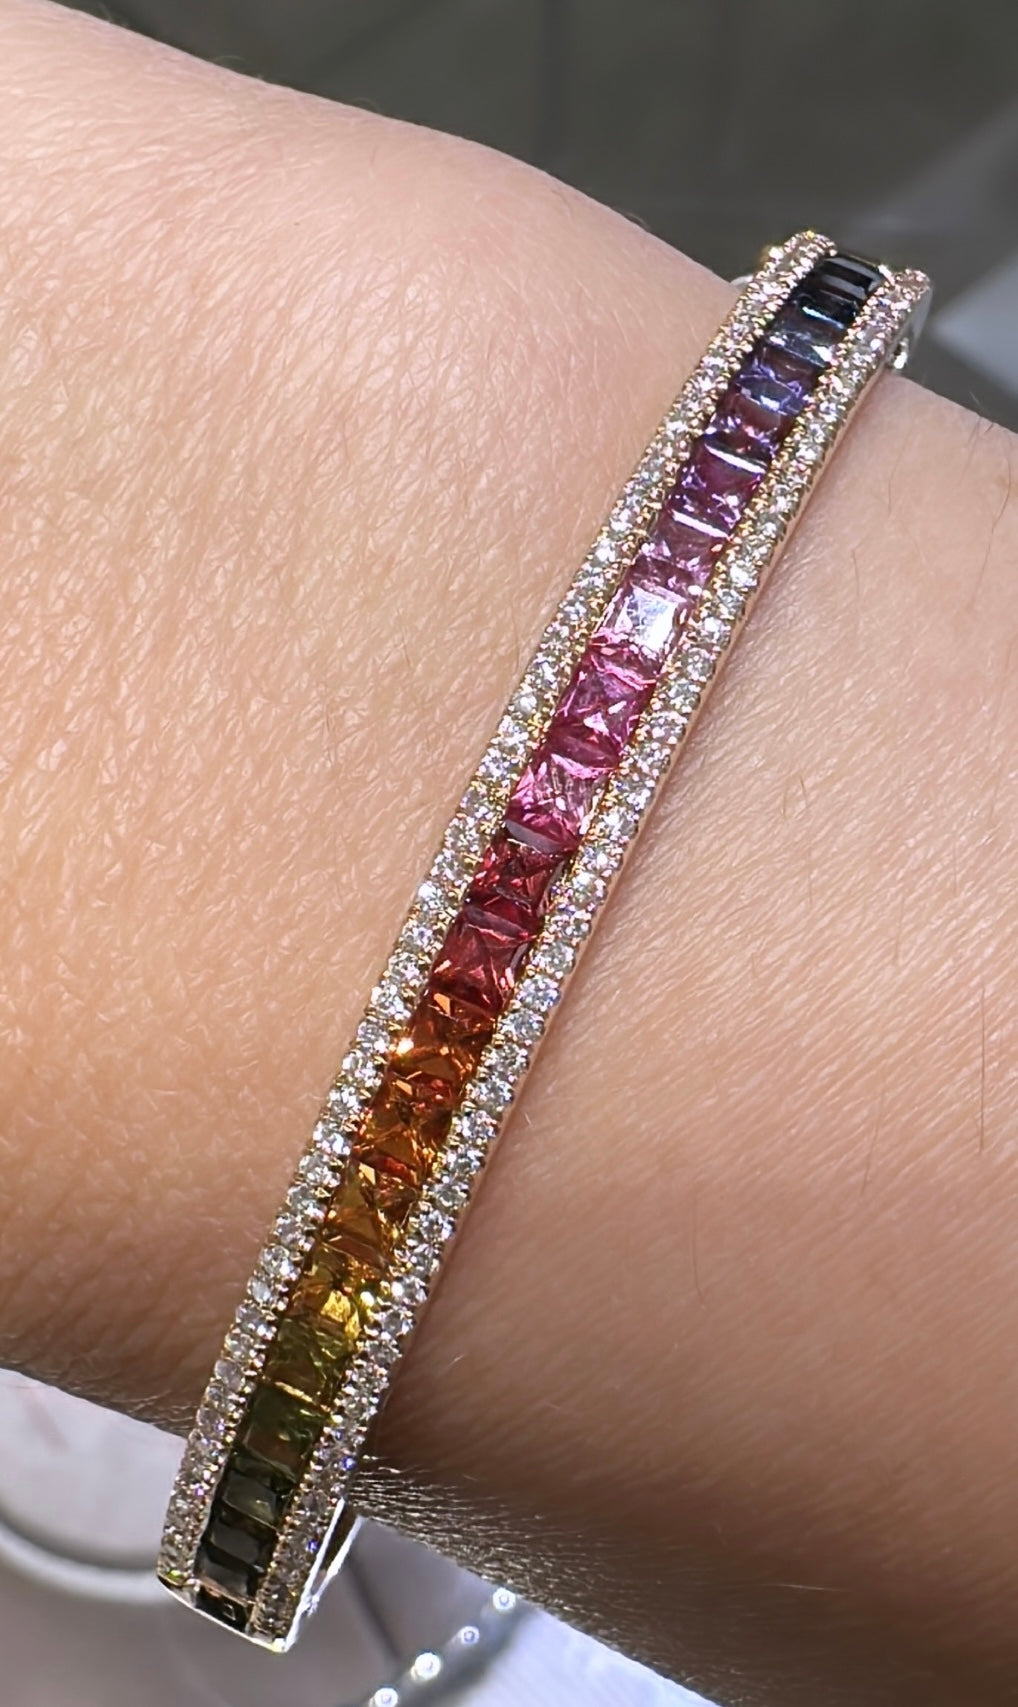 Jewels of Color with impressive gemstones - Bonebakker shop